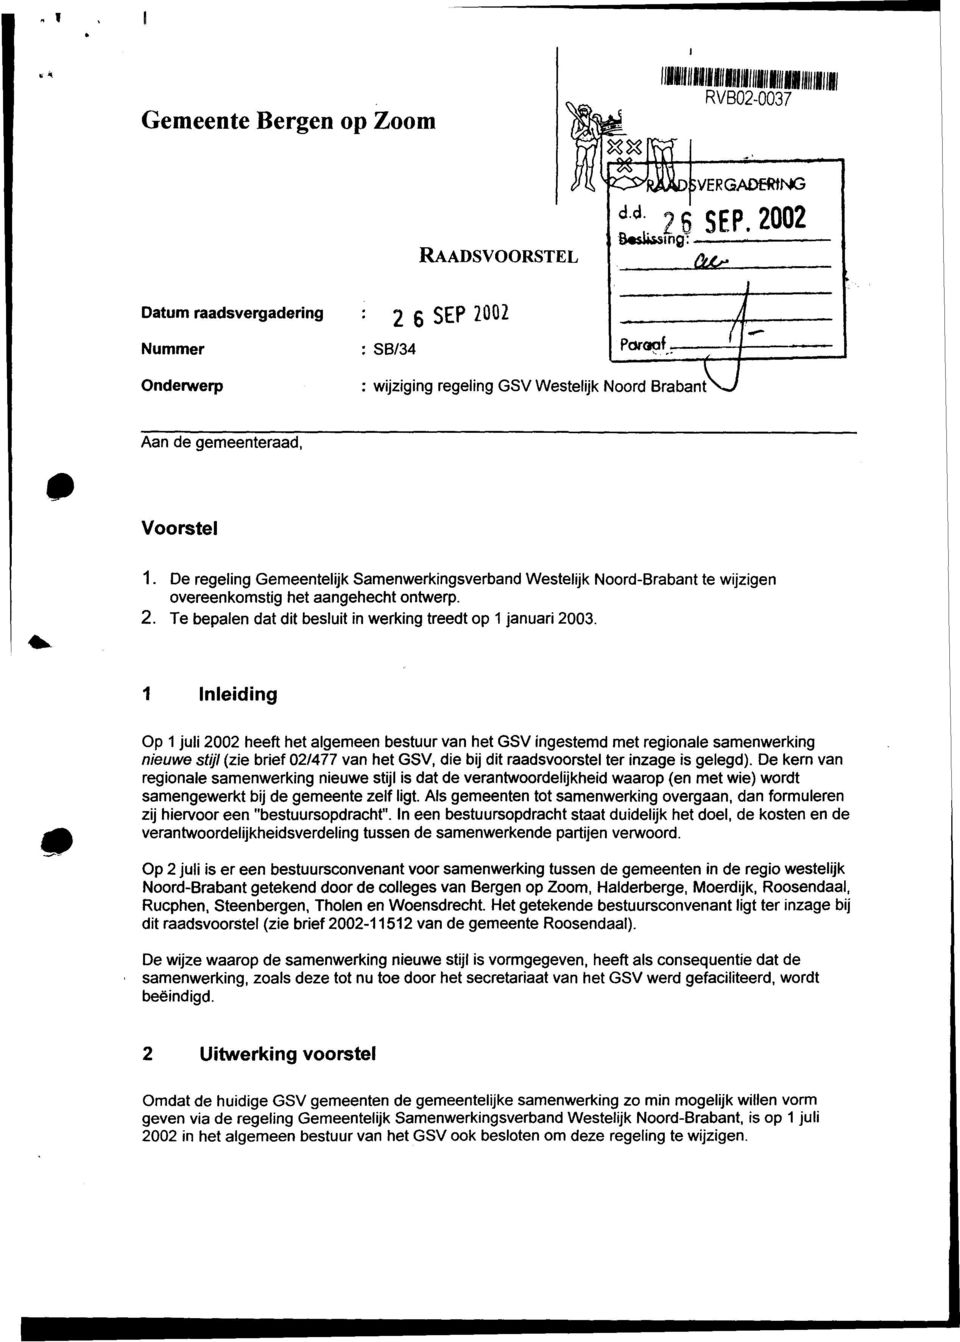 De regeling Gemeentelijk Samenwerkingsverband Westelijk Noord-Brabant te wijzigen overeenkomstig het aangehecht ontwerp. 2. Te bepalen dat dit besluit in werking treedt op 1 januari 2003.